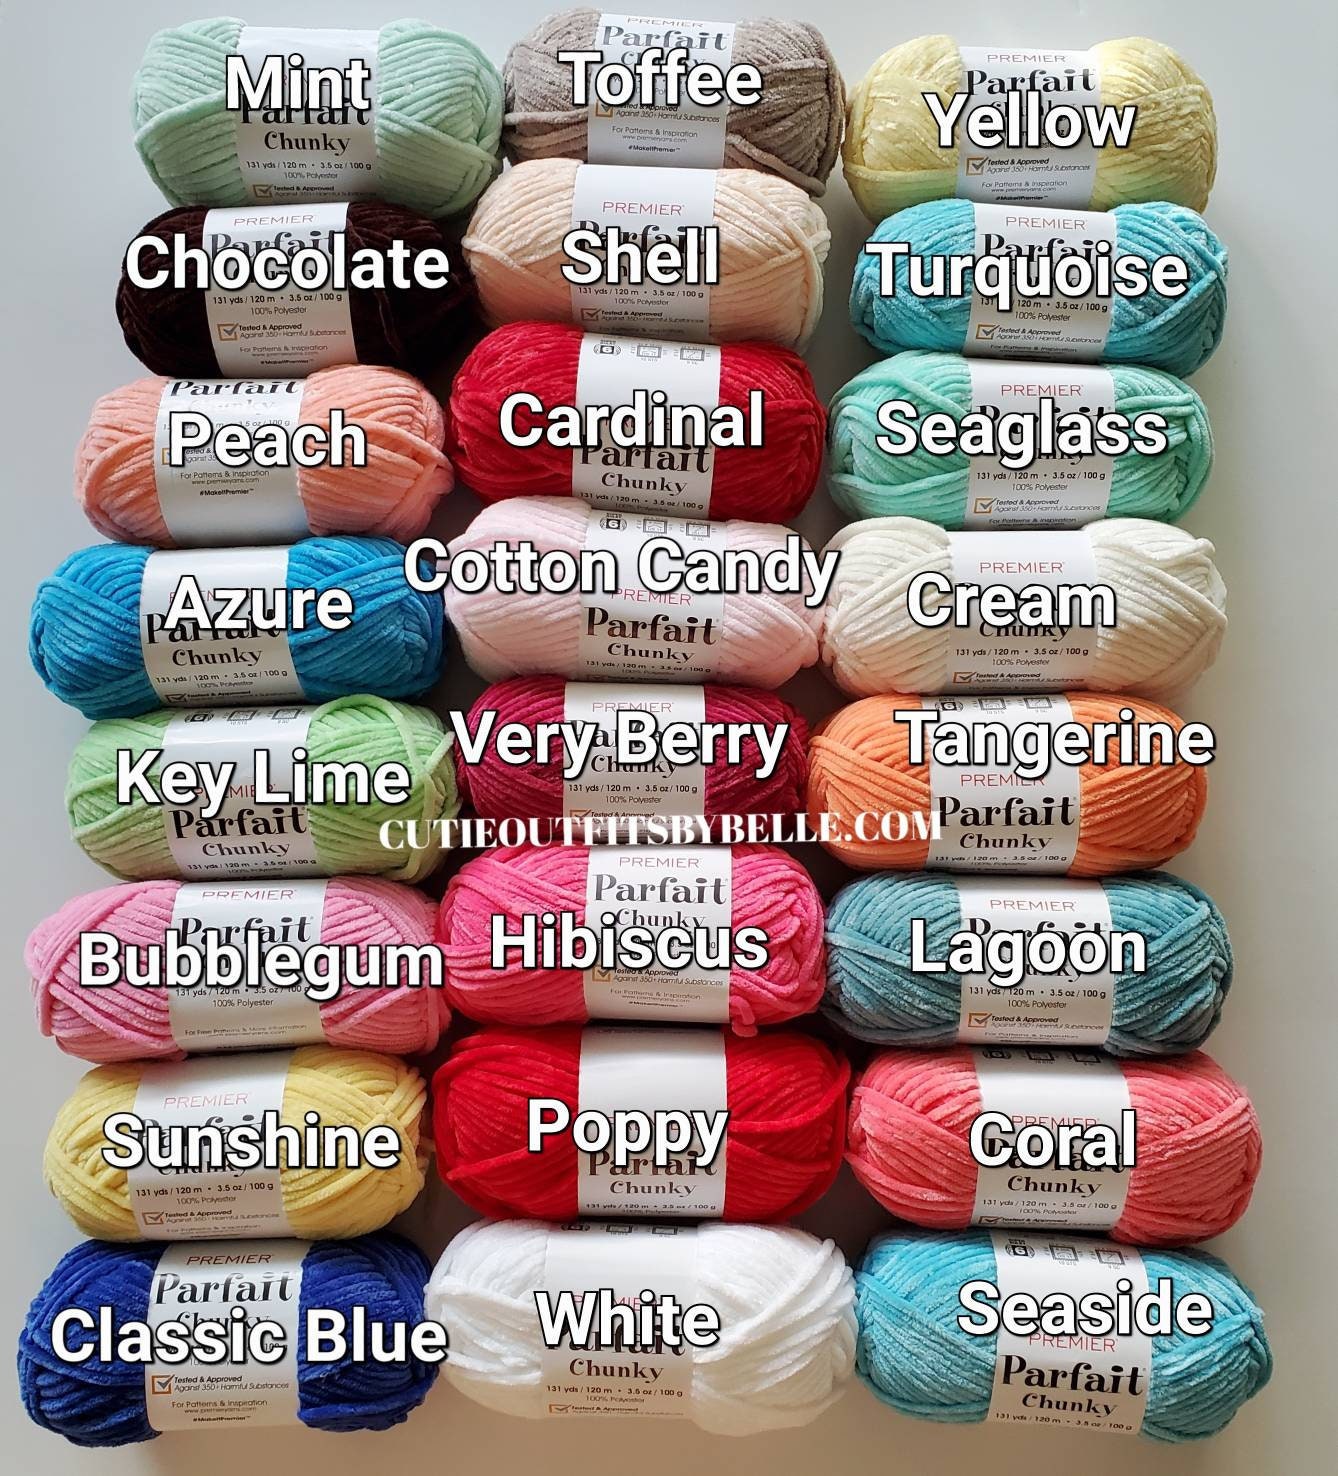 Premier Parfait Chunky Yarn-Poppy 1150-17 Super Bulky Size 6